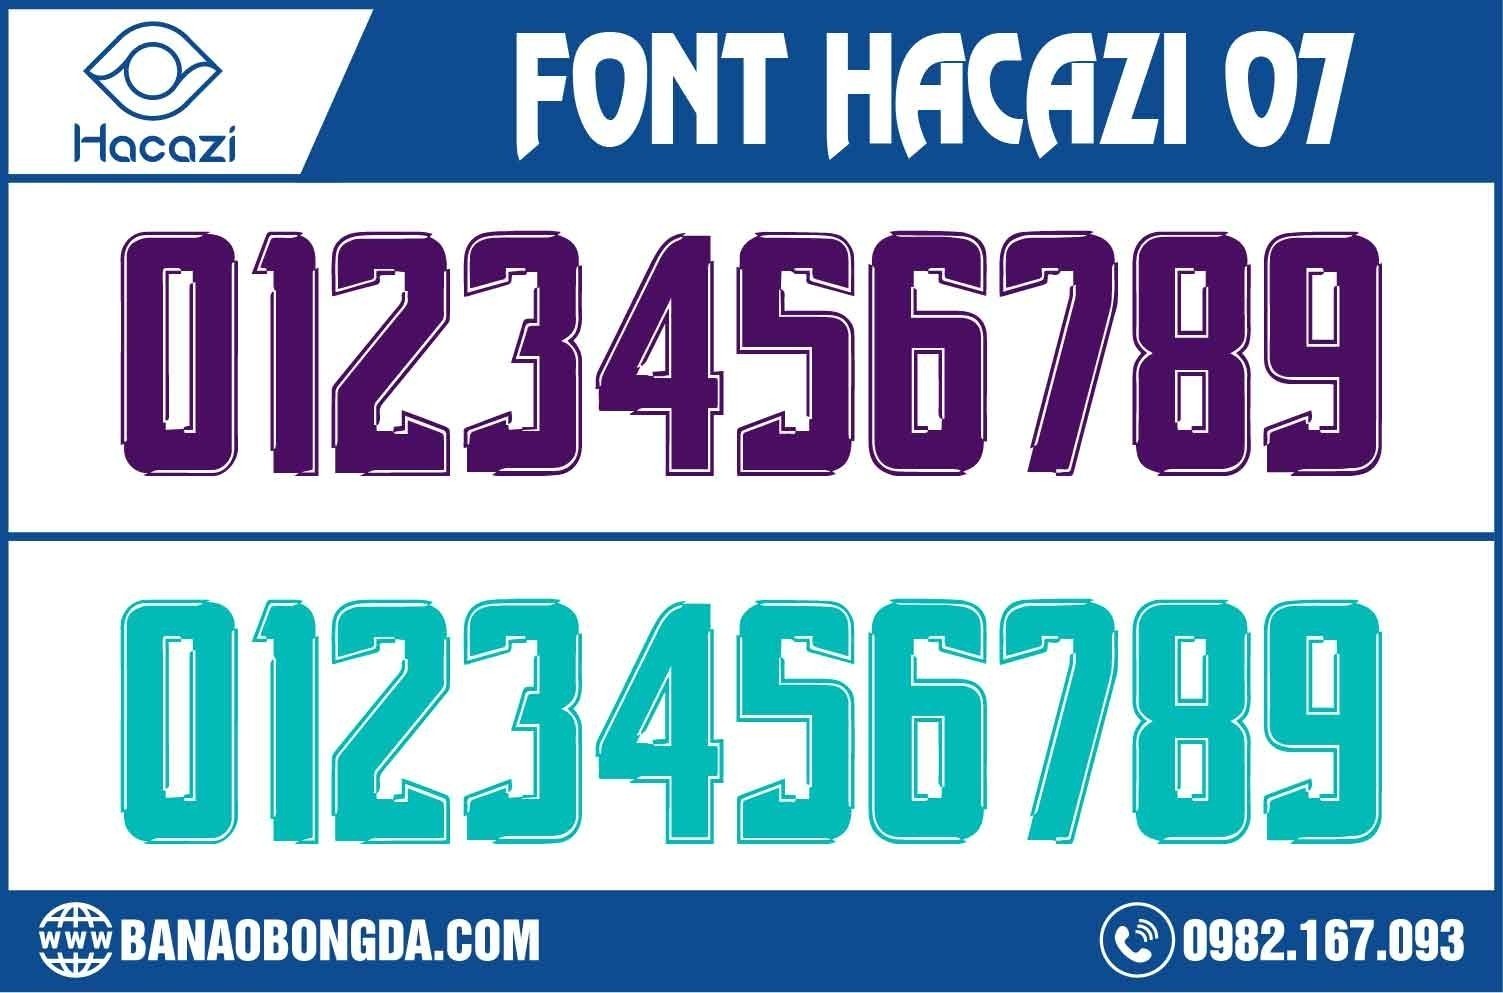 Phiên bản font số áo bóng đá 07 màu xanh real và tím mới được ra mắt tại Hacazi Sport. Thật khó để có thể lựa chọn một từ ngữ thích hợp miêu tả cho sự nổi bật này. Nhưng đây chắc chắn là bộ font mà bạn không nên bỏ lỡ để phối hợp với mẫu áo bóng đá yêu thích của bạn trở nên hoàn hảo trong mùa hè này.